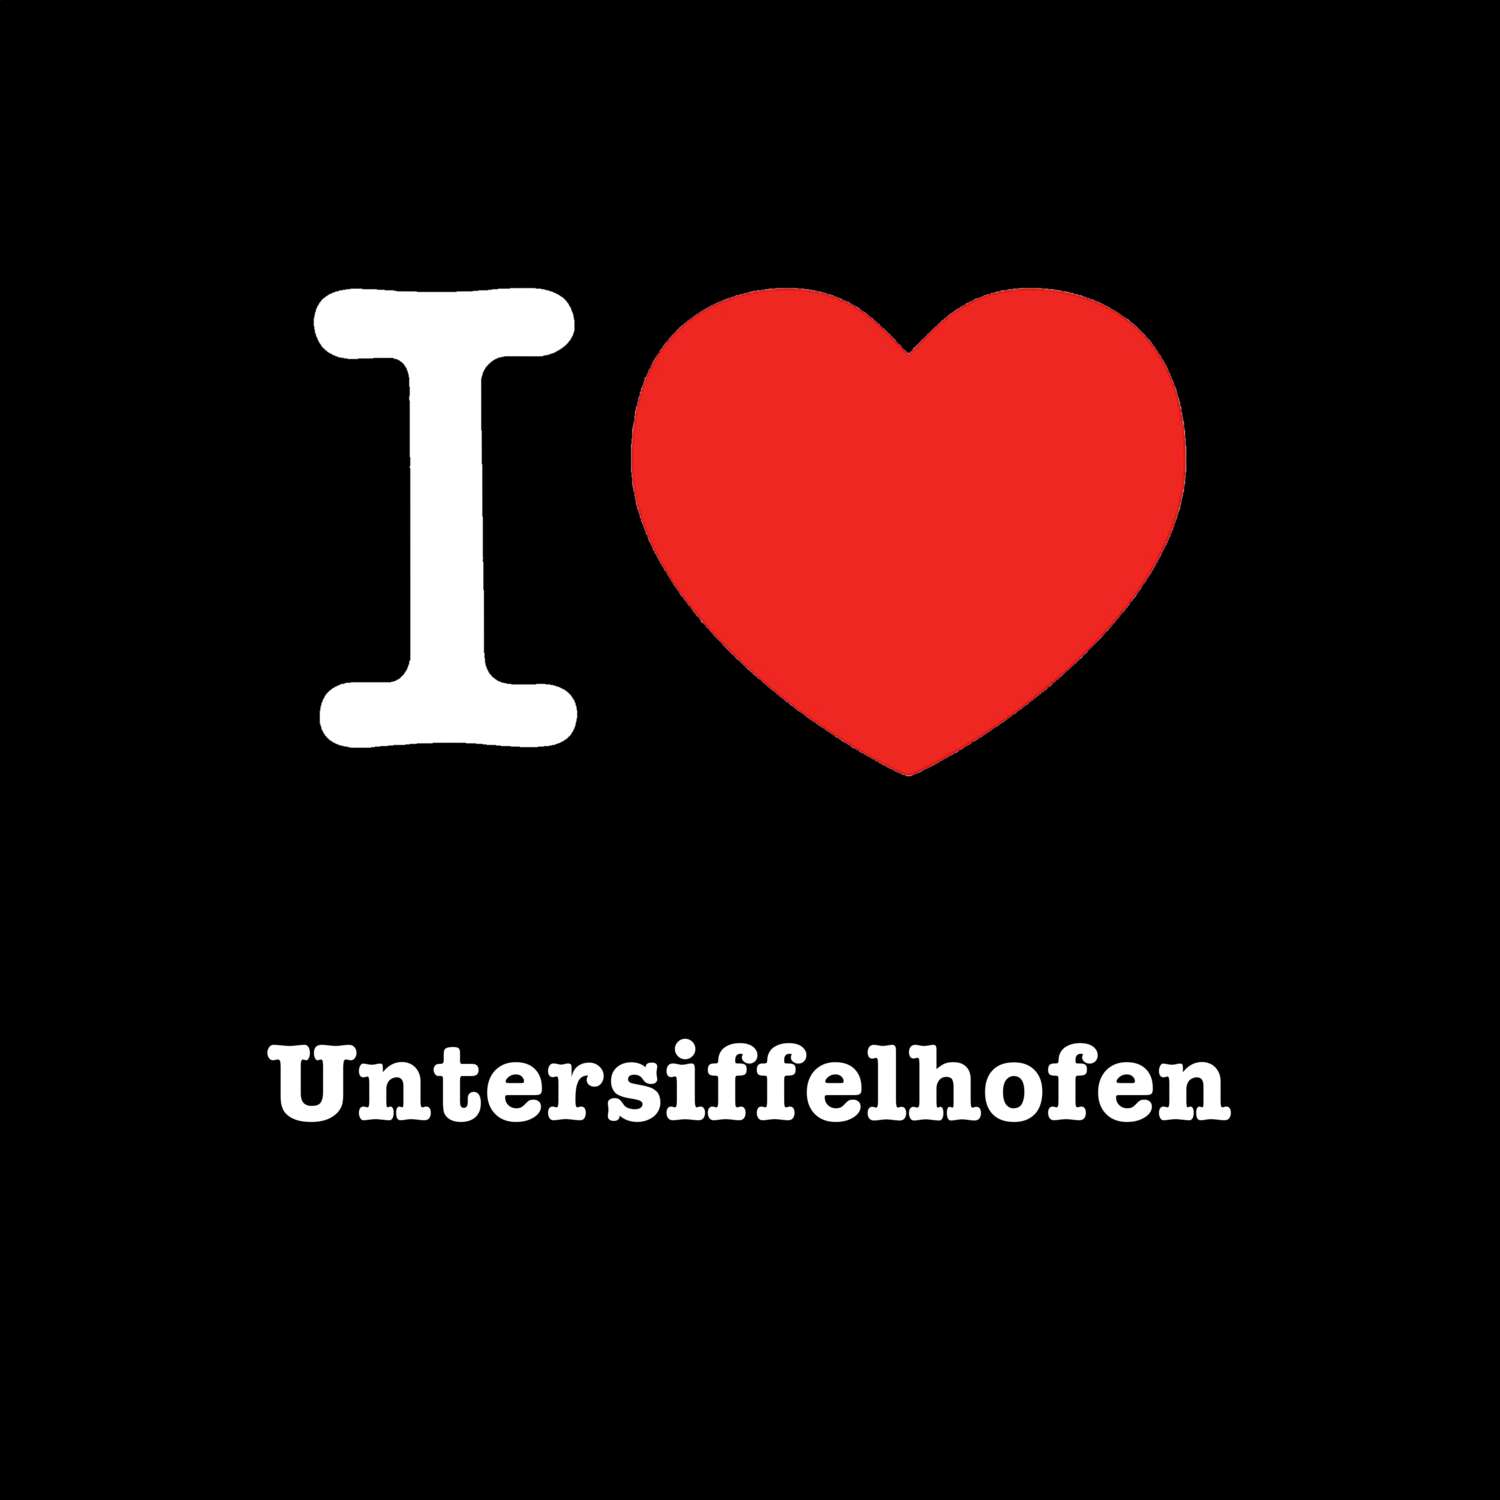 Untersiffelhofen T-Shirt »I love«